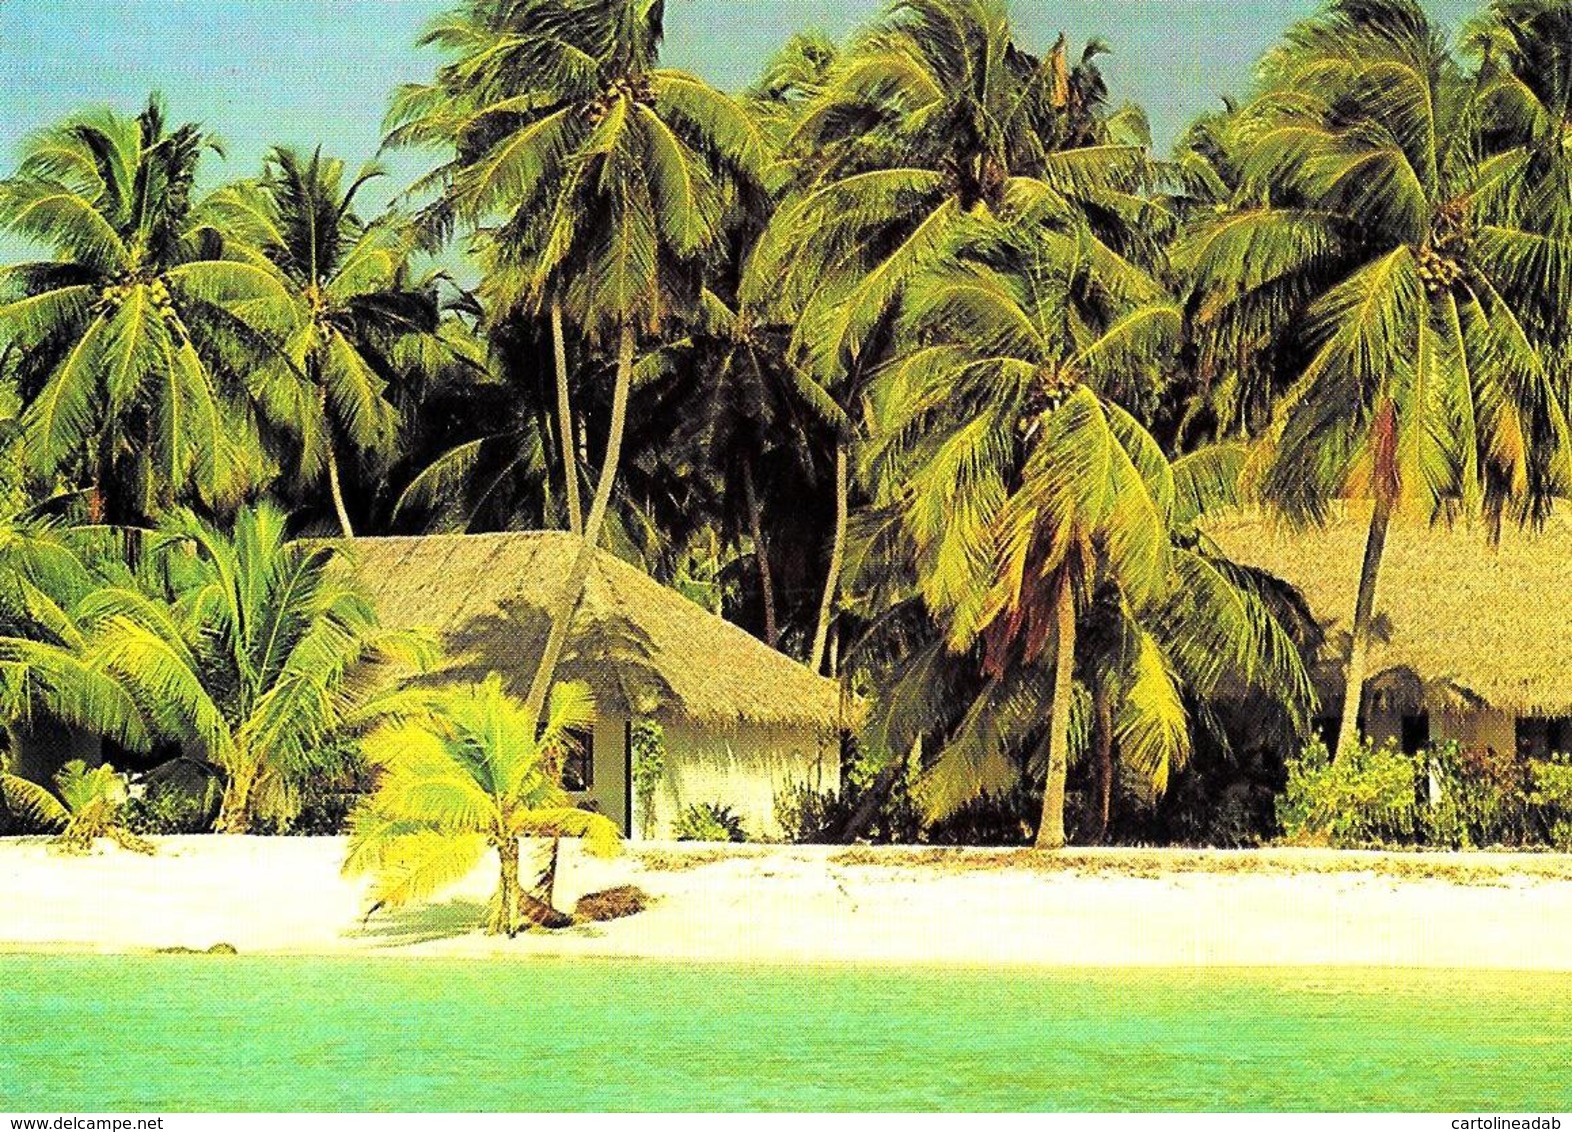 [MD3003] CPM - MALDIVE - KURUMBA VILLAGE - ART EDITION - BY ERIC KLEMM - Non Viaggiata - Maldive